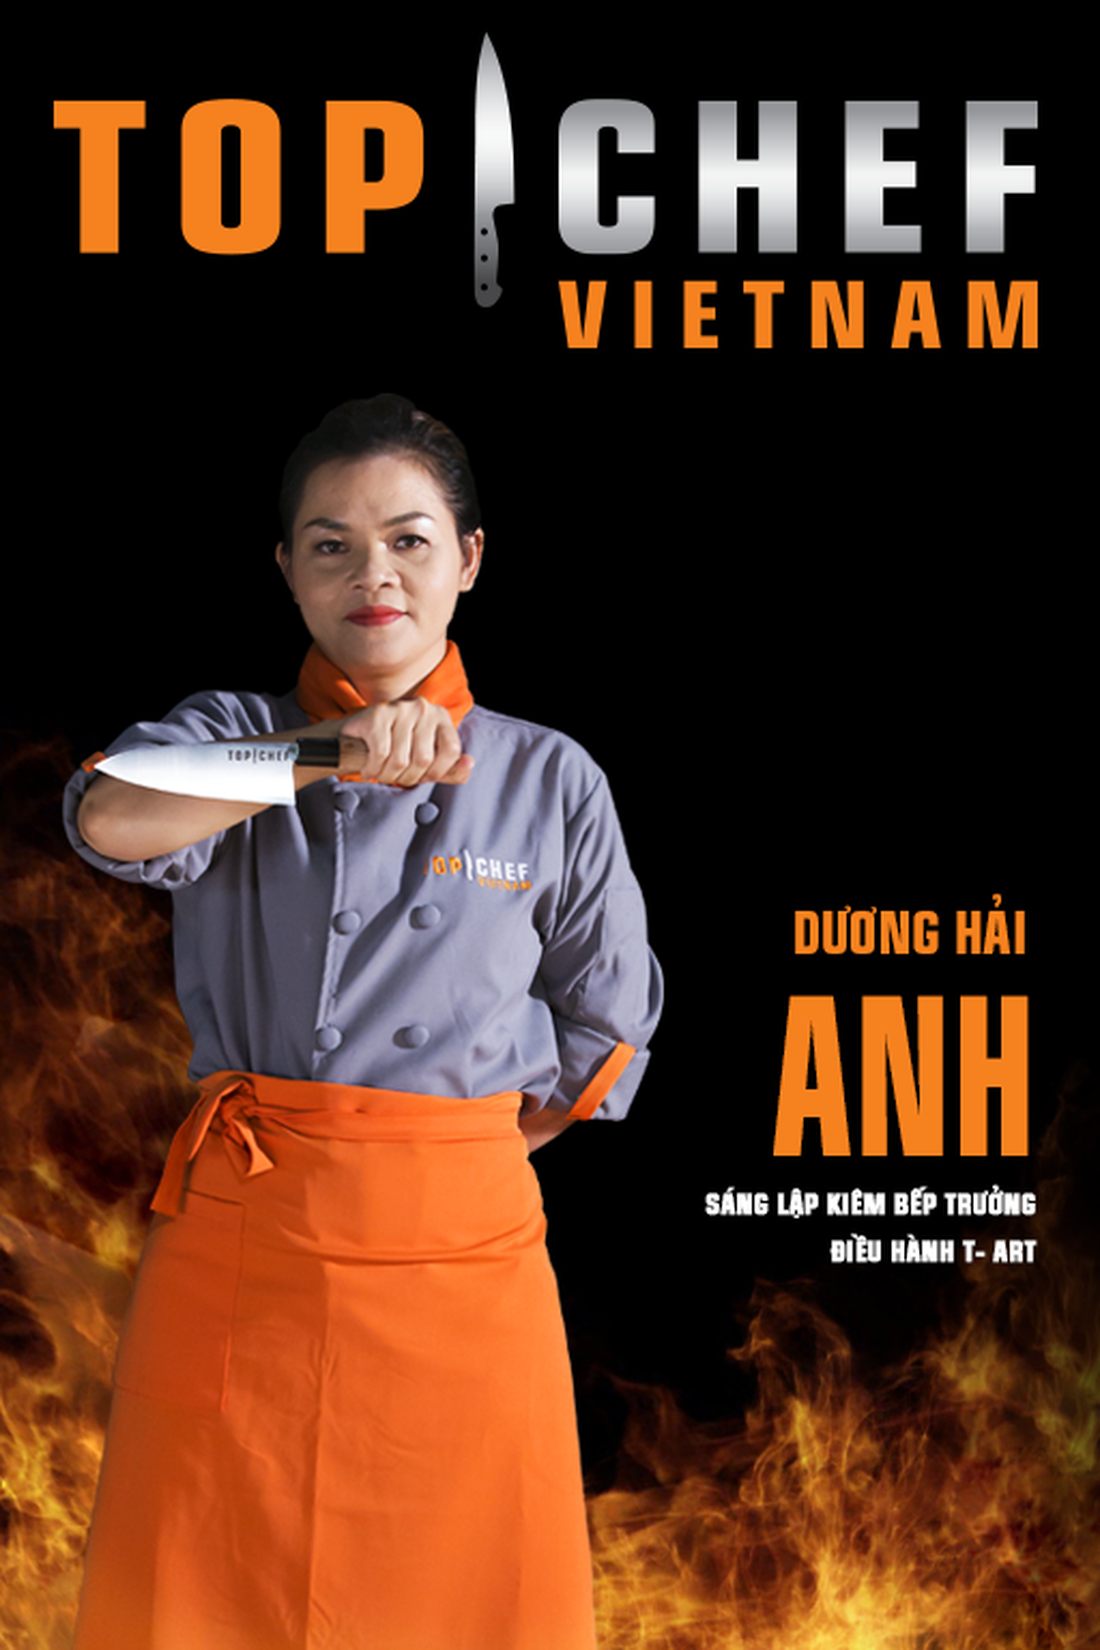 Lộ diện top 14 Đầu bếp thượng đỉnh - Top chef Vietnam 2019 - Ảnh 6.